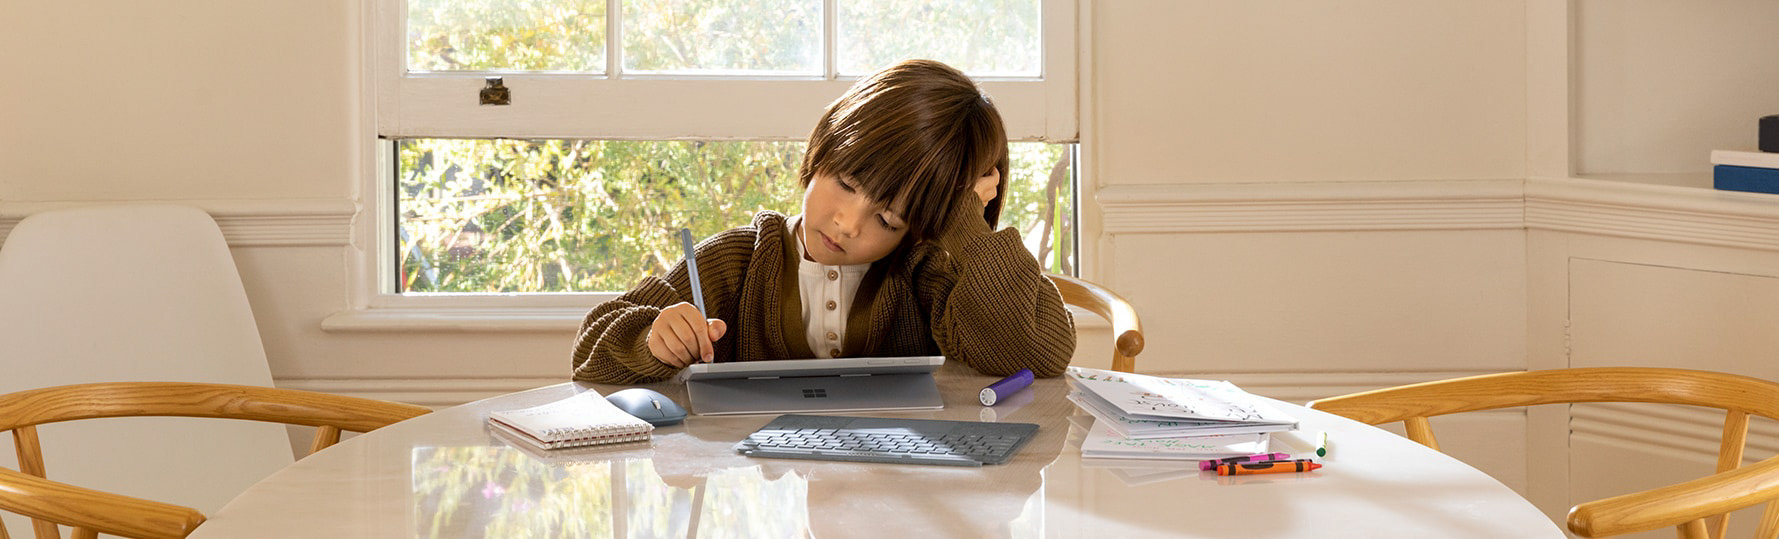 ノート PC をペンで操作する子ども